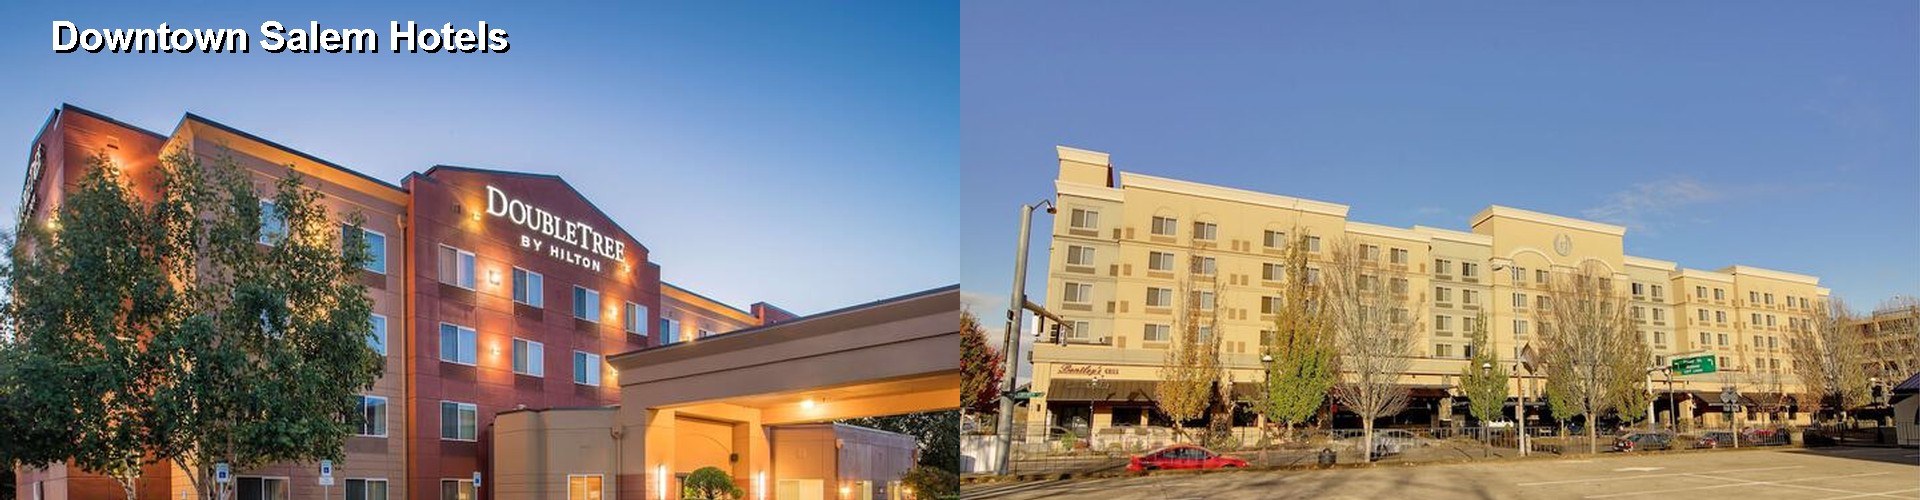 3 Best Hotels near Downtown Salem